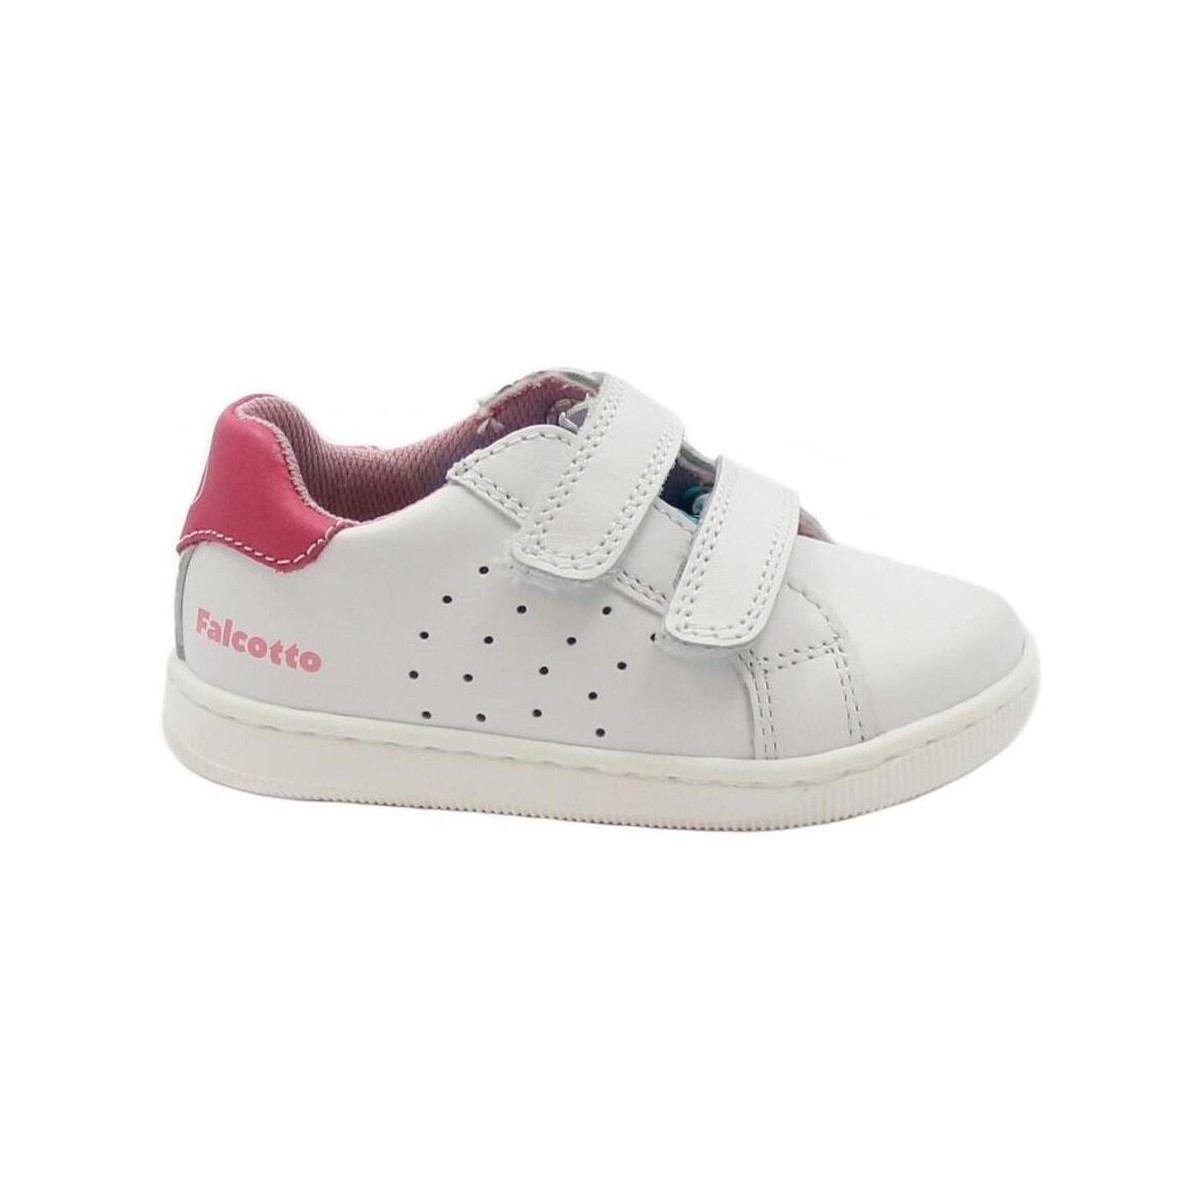 Sapatos Criança Sapatilhas Naturino FAL-E24-17749-WF-a Branco